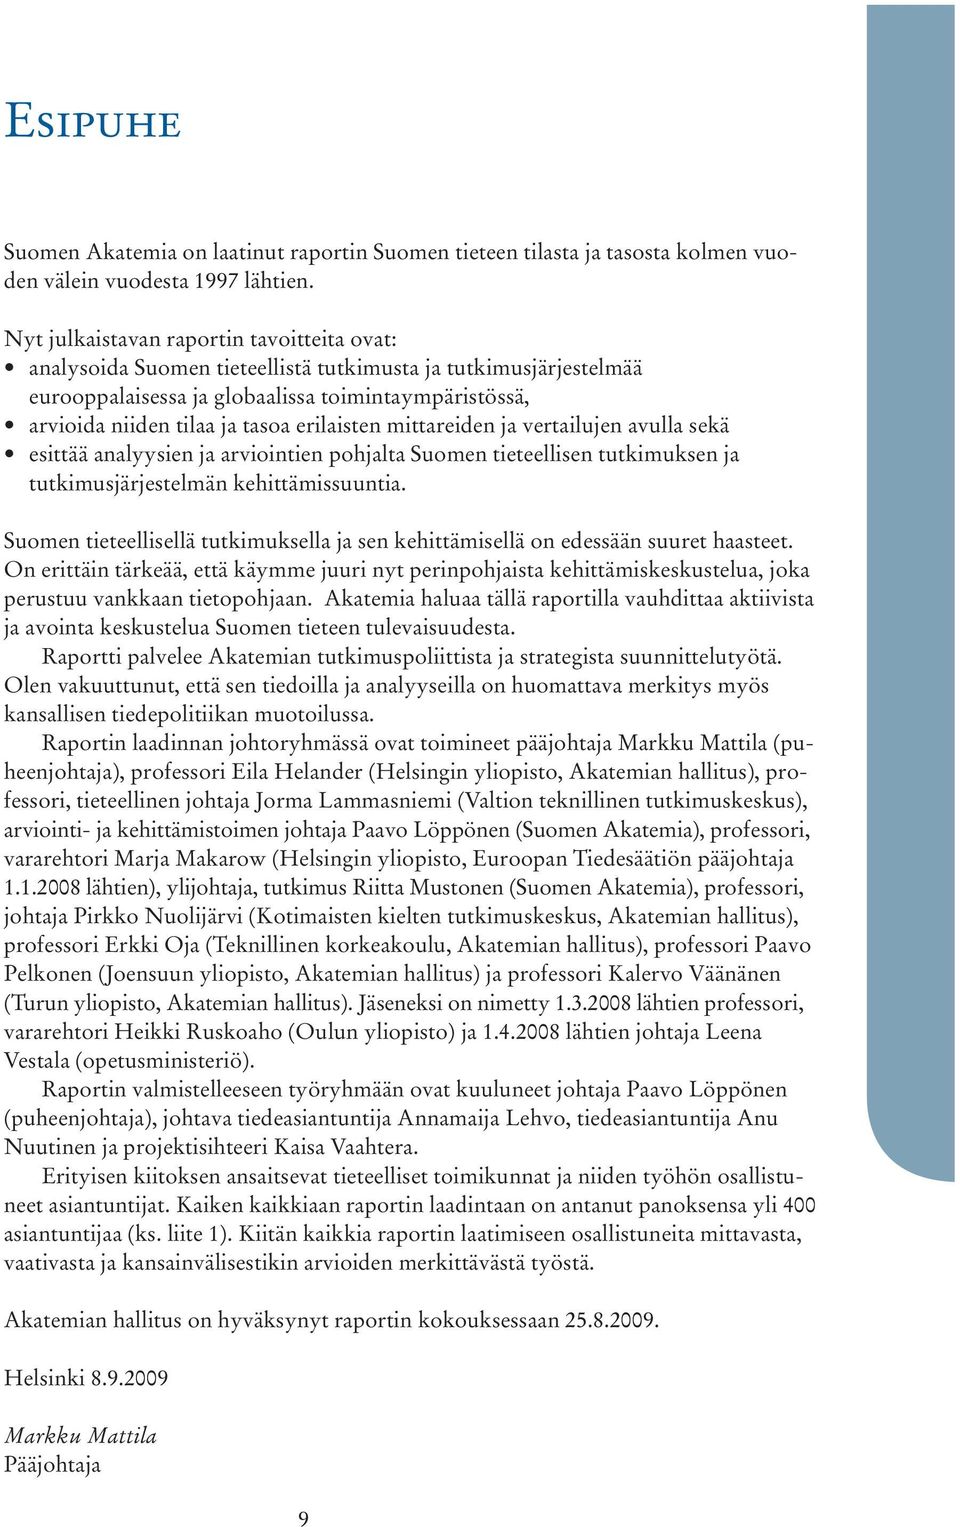 erilaisten mittareiden ja vertailujen avulla sekä esittää analyysien ja arviointien pohjalta Suomen tieteellisen tutkimuksen ja tutkimusjärjestelmän kehittämissuuntia.